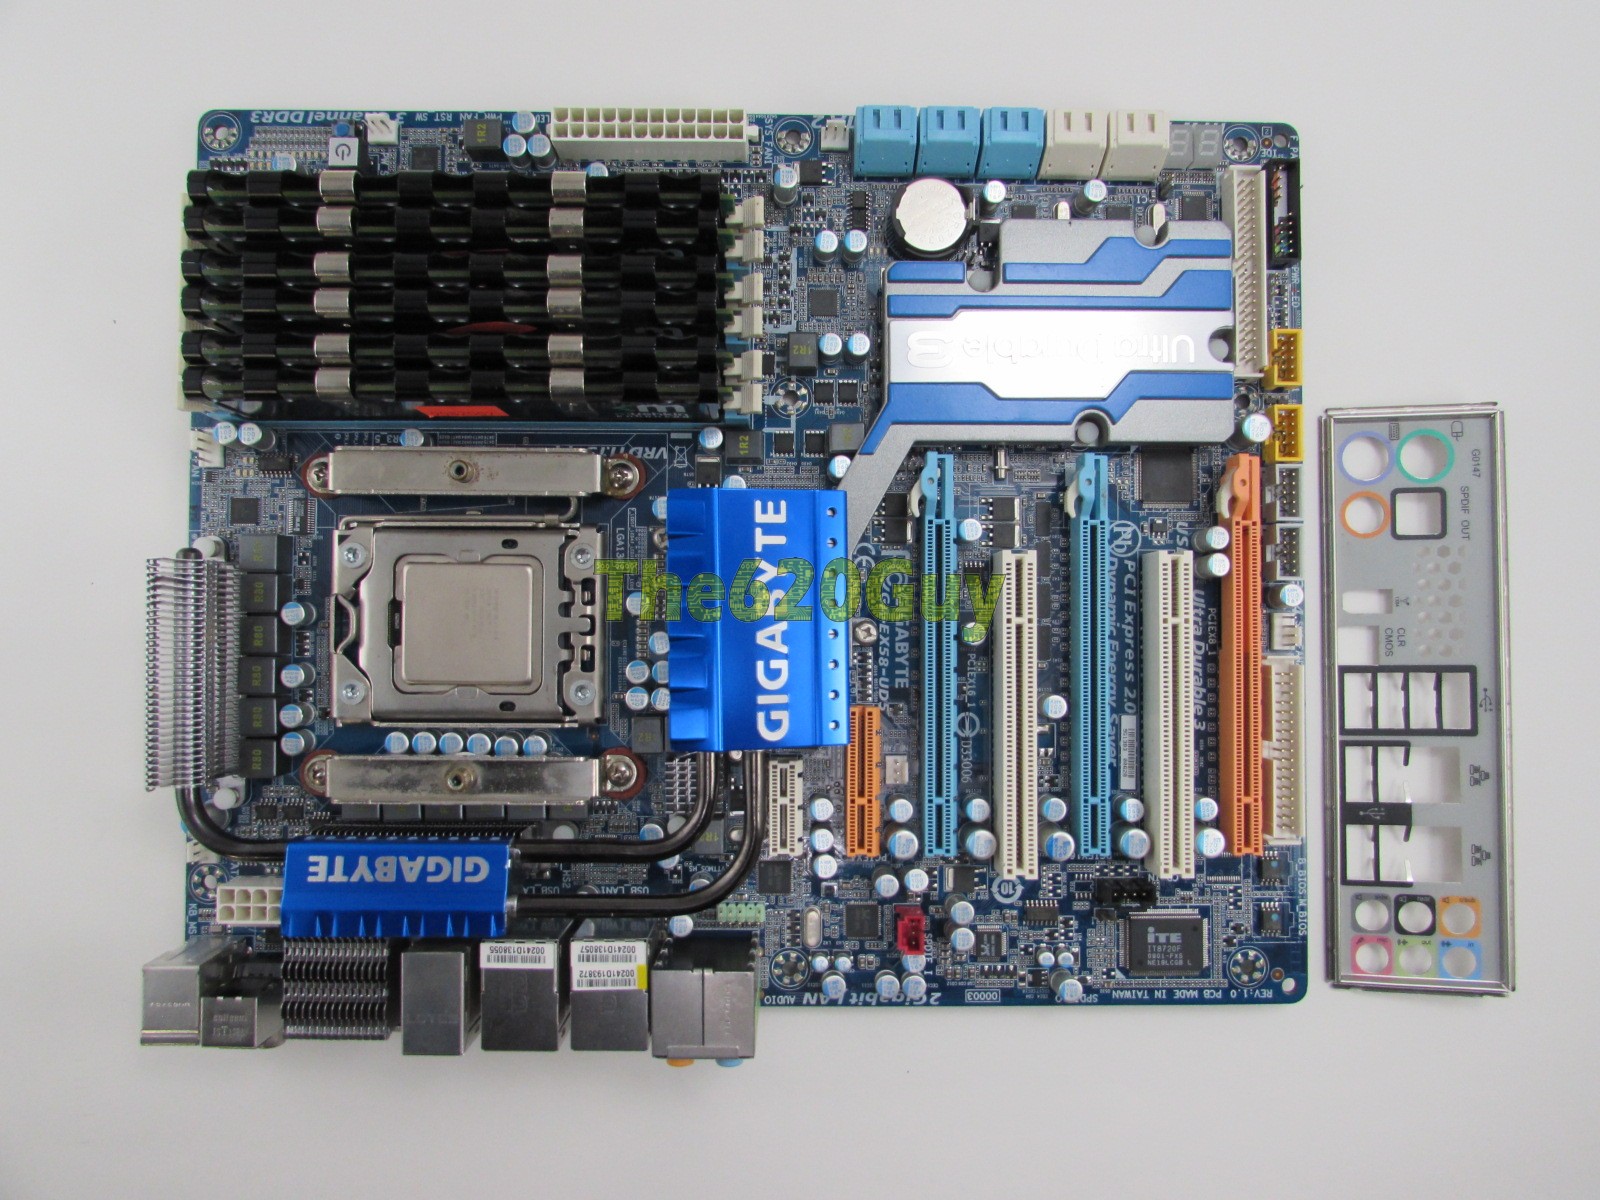 Gigabyte GA-EX58-UD5 REV 1.0 Motherboard + Intel i7 920 2.66GHz CPU